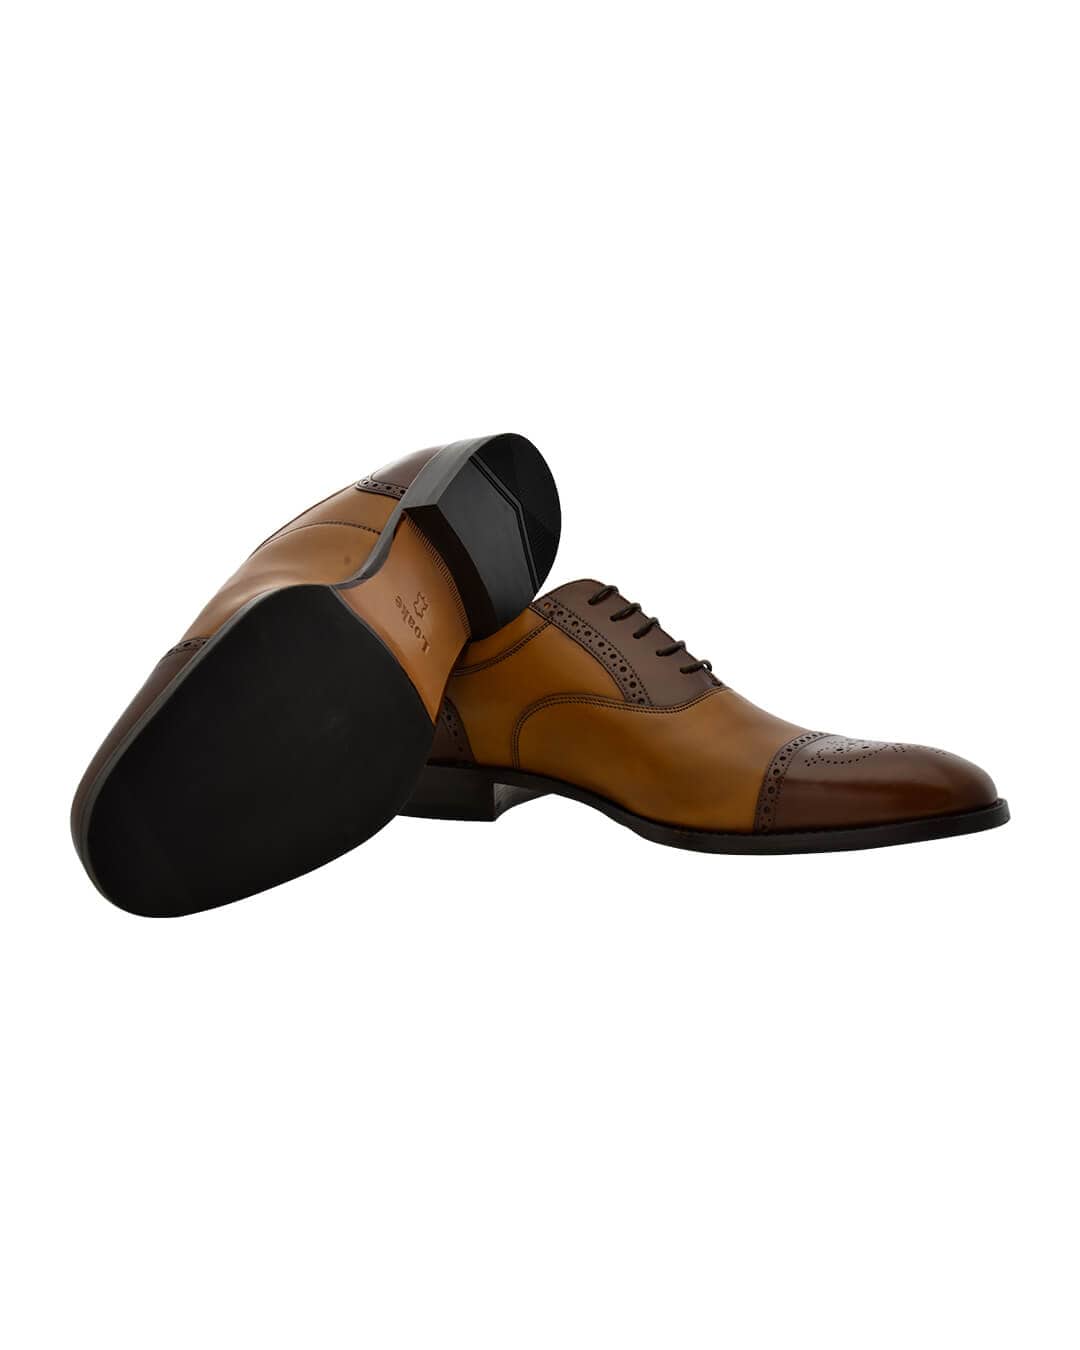 Gagliardi Shoes Gagliardi Two-Tone Brown &amp; Tan Leather Oxford Shoes